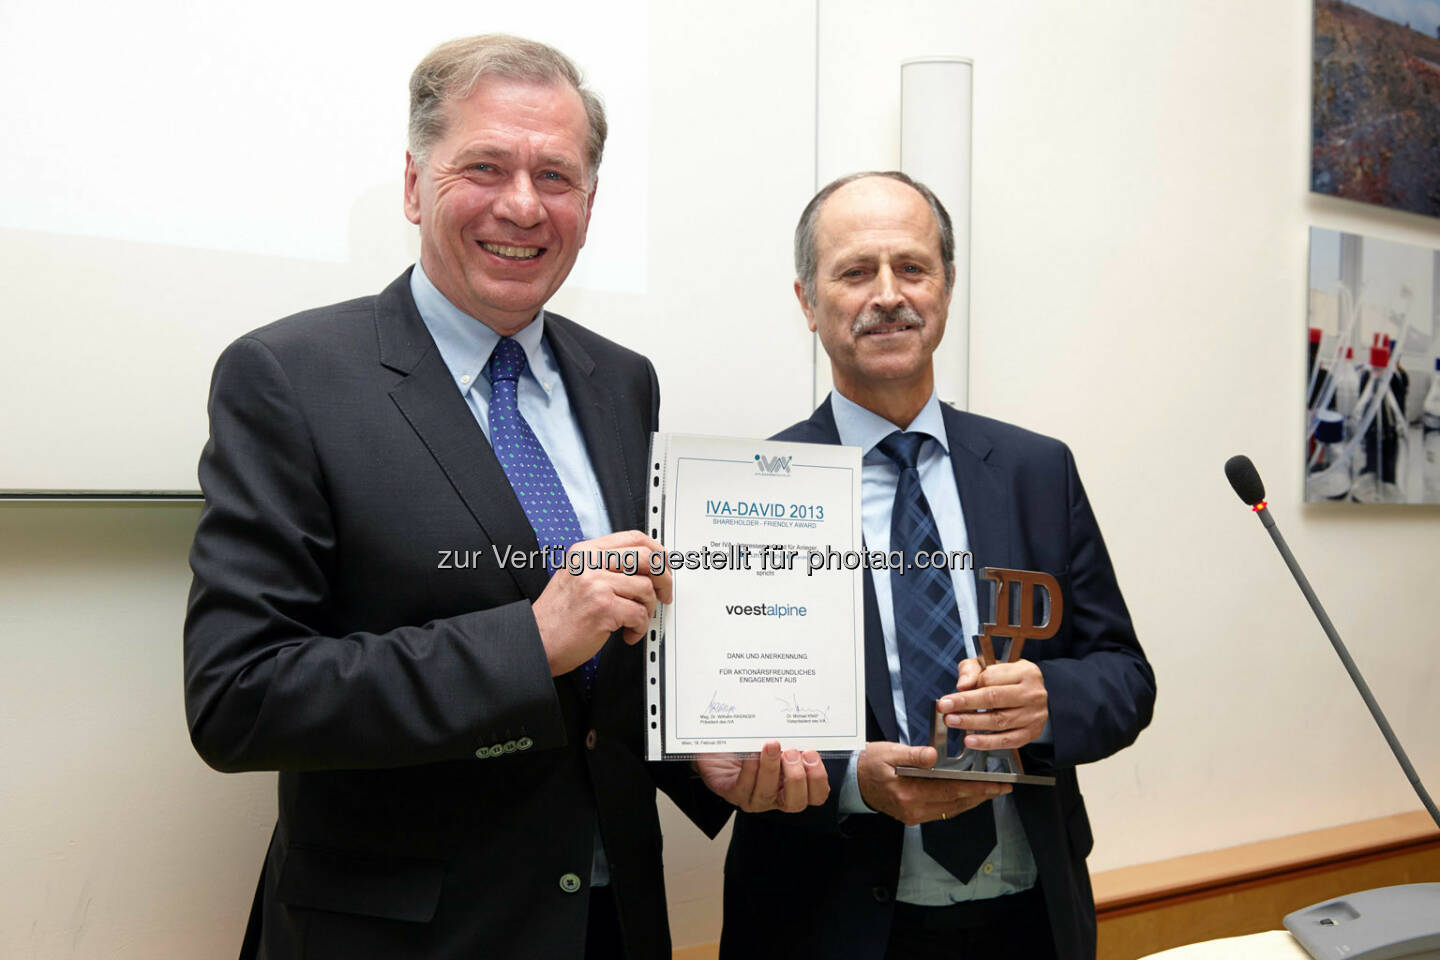 Verleihung des IVA-David 2013 an die voestalpine AG - entgegengenommen von Hubert Possegger